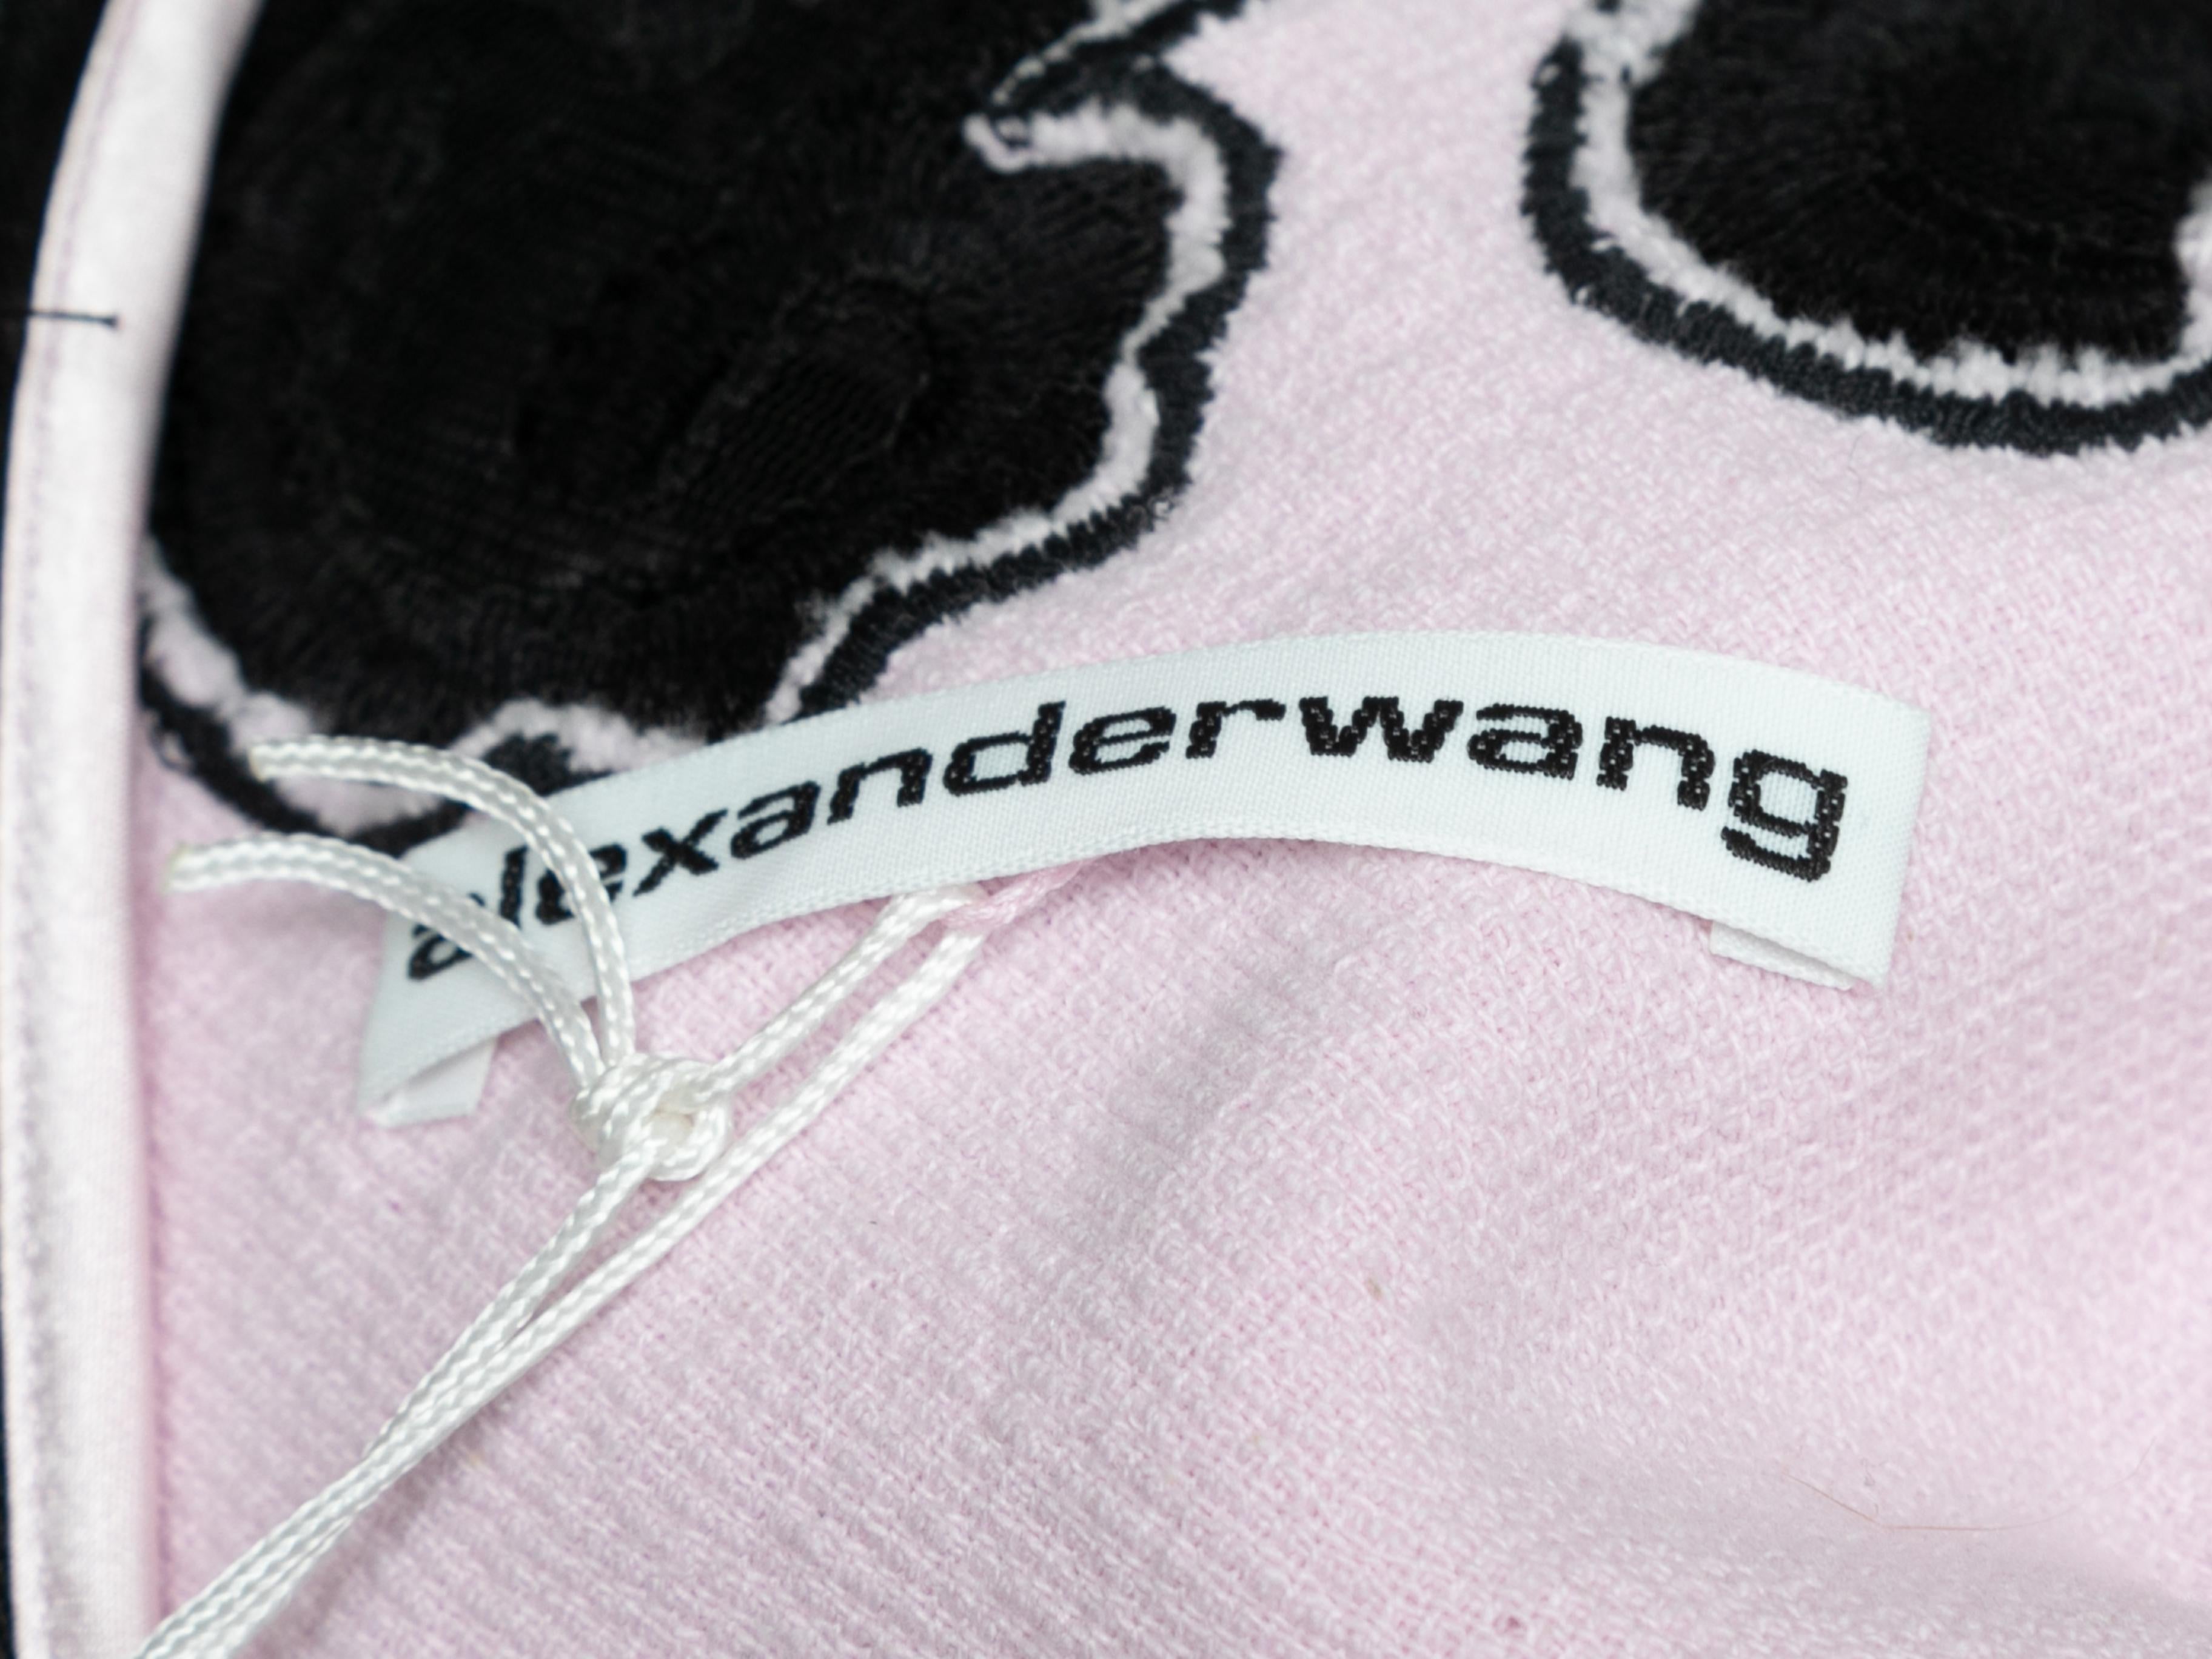 Mini robe sans manches en tissu éponge rose pâle et noir et en dentelle brodée, signée Alexander Wang. Décolleté en cœur. Bretelles étroites. Fermeture à glissière au dos. Poitrine 32